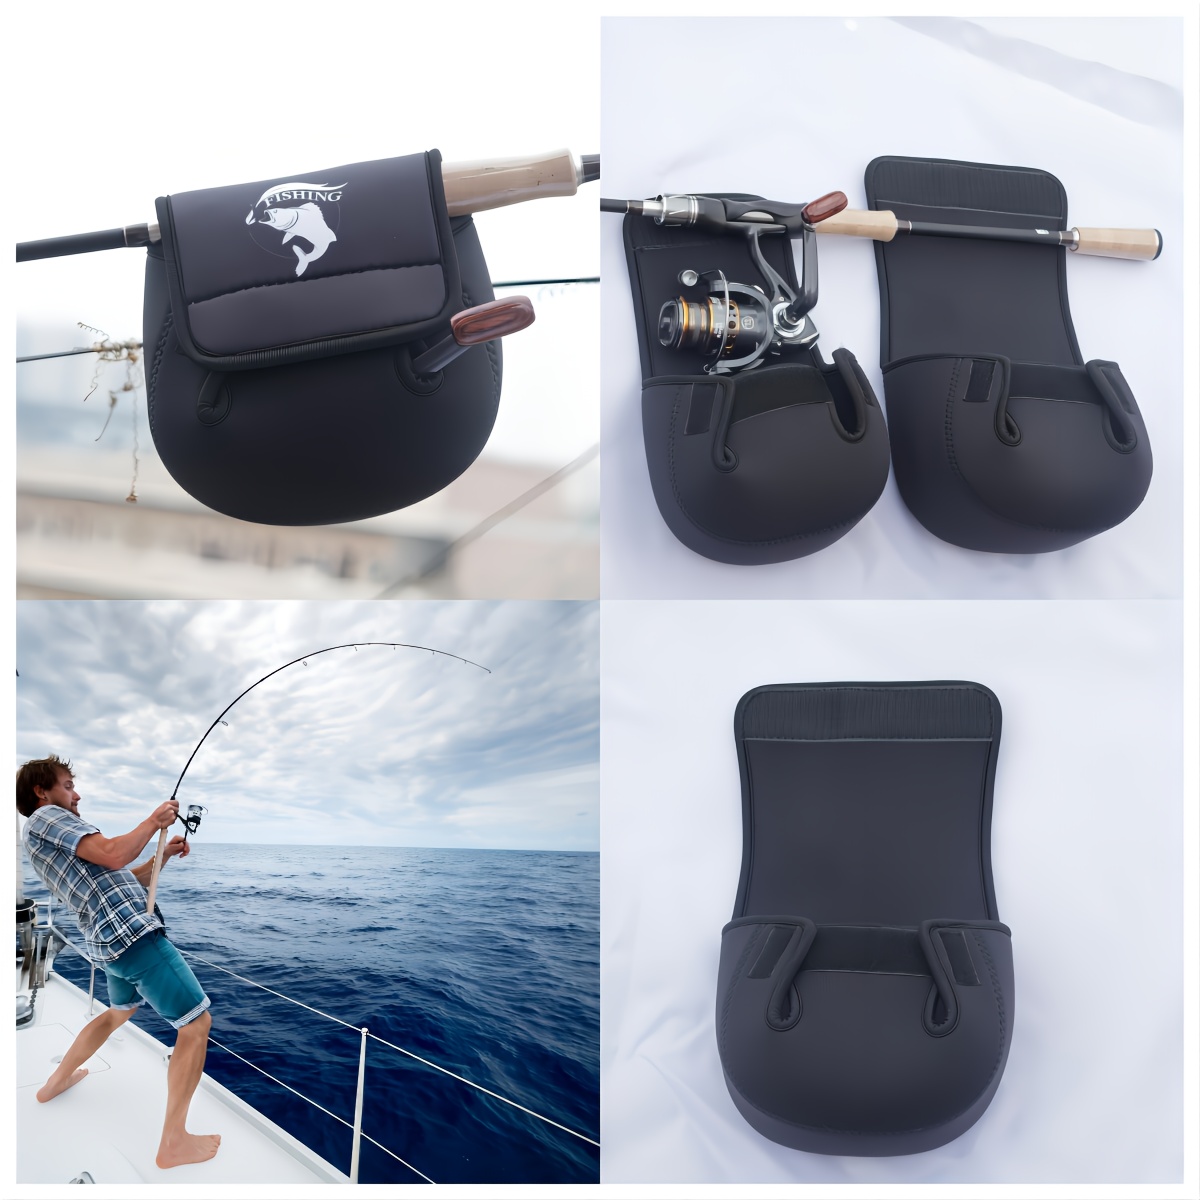 Drop Wheel Protective Cover Fishing Reel Bag Tackle Black - Temu